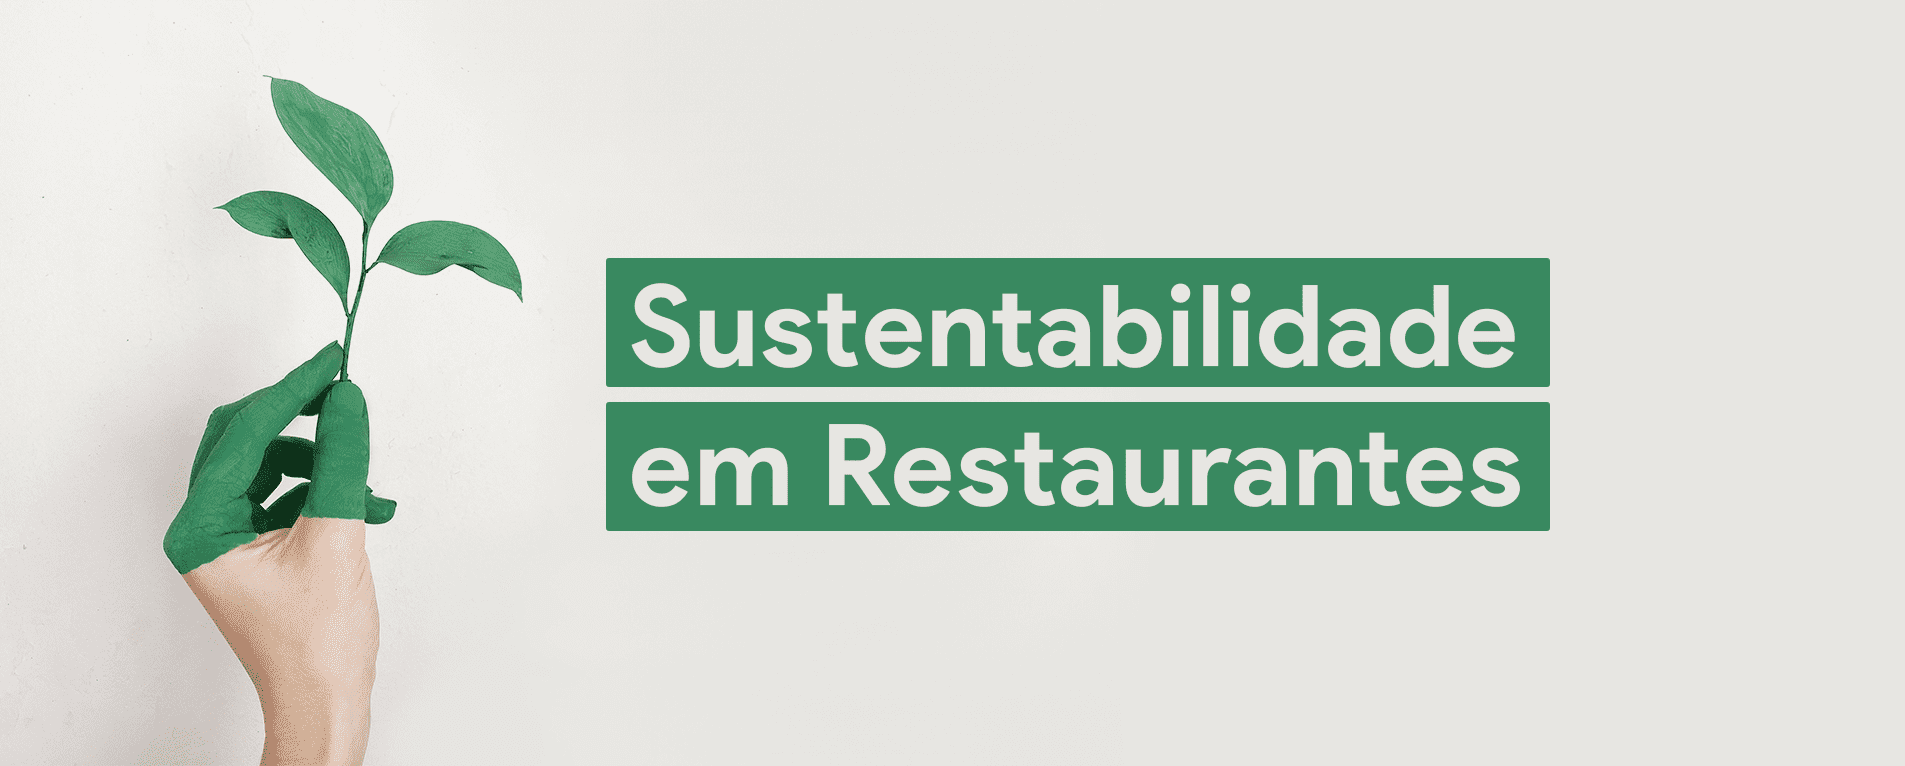 7 Dicas para Praticar a Sustentabilidade em Restaurantes